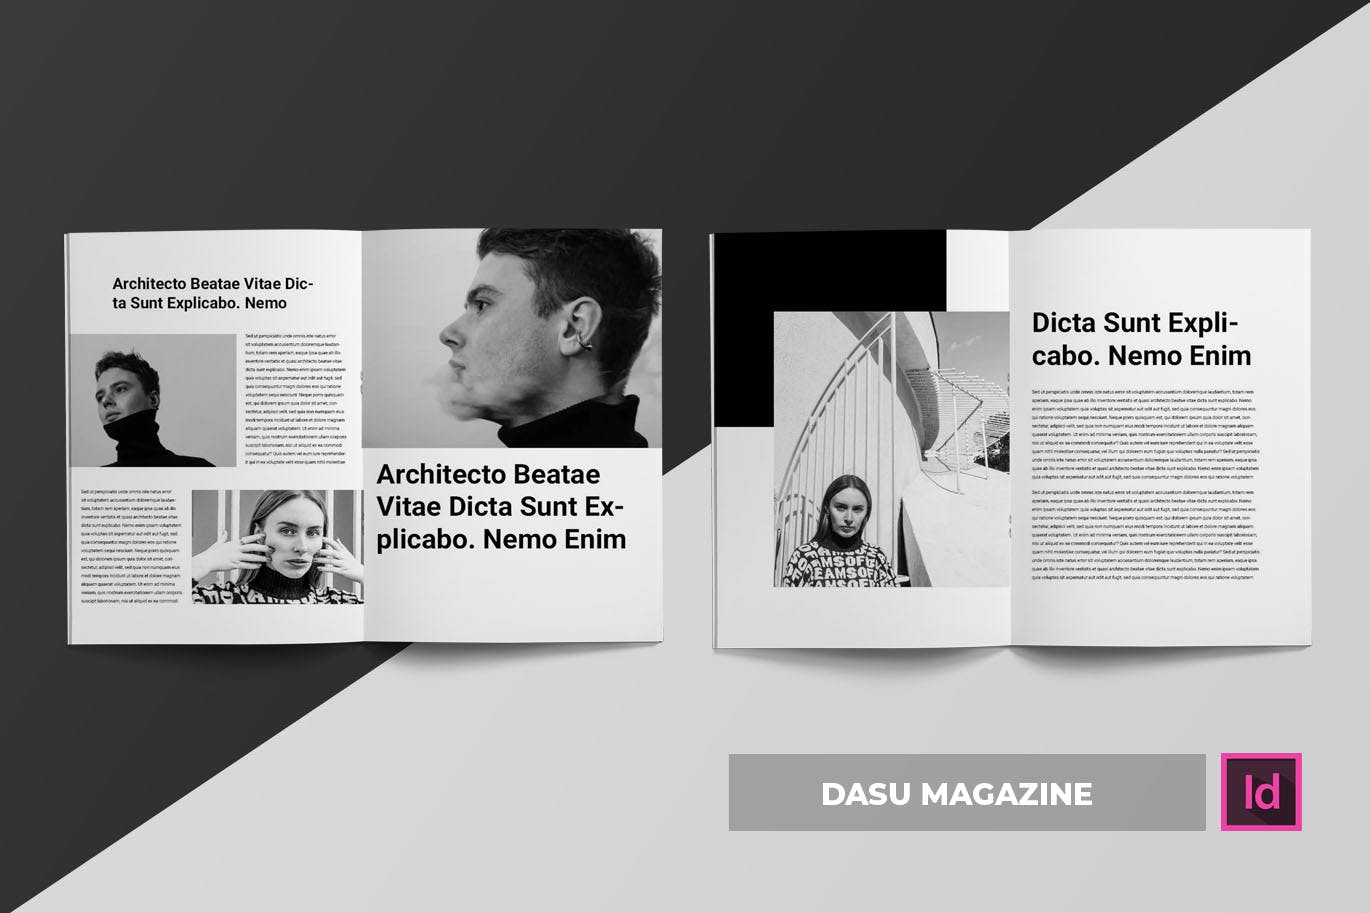 摄影艺术/时装设计主题非凡图库精选杂志排版设计模板 Dasu | Magazine Template插图(2)